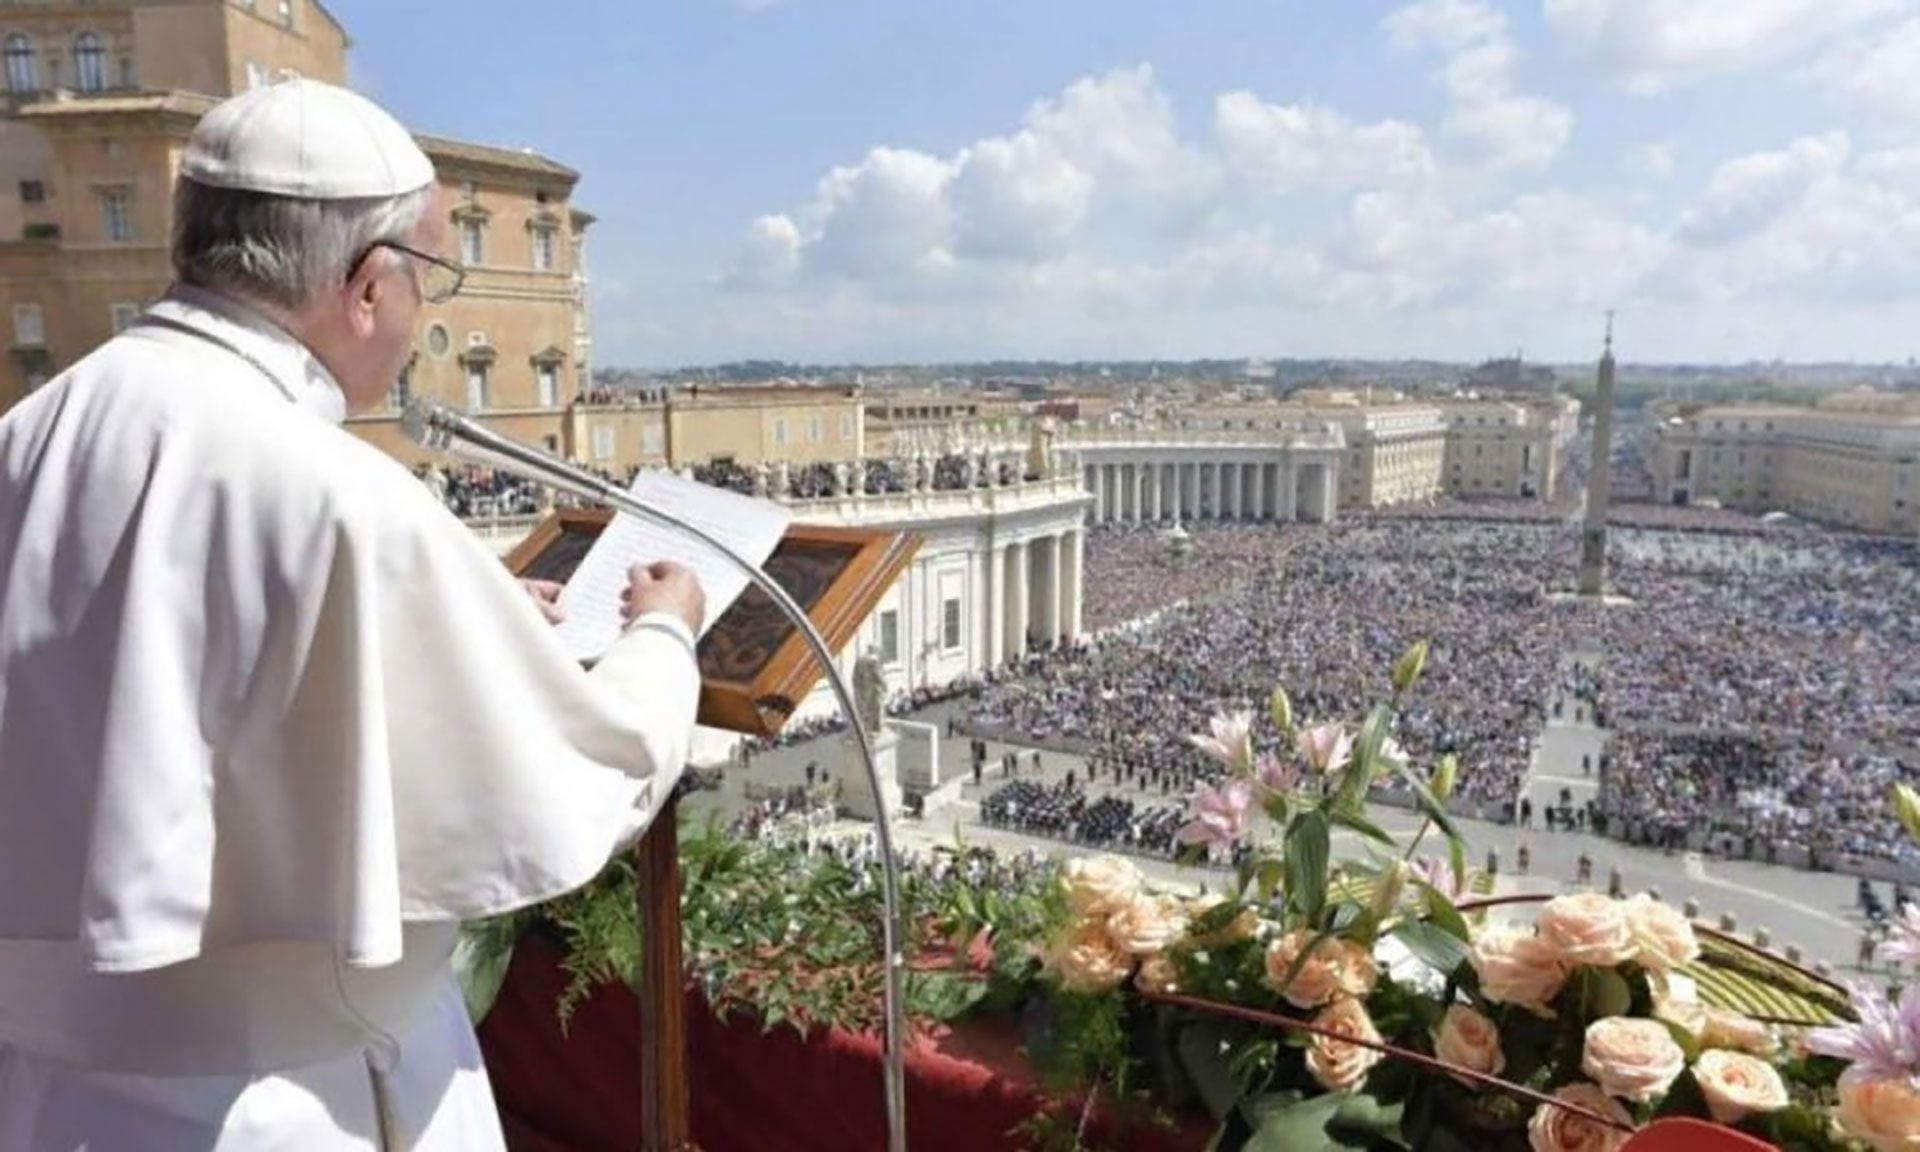 El Papa es el sucesor del apóstol Pedro, y es el obispo de Roma, la cabeza de la Iglesia Católica